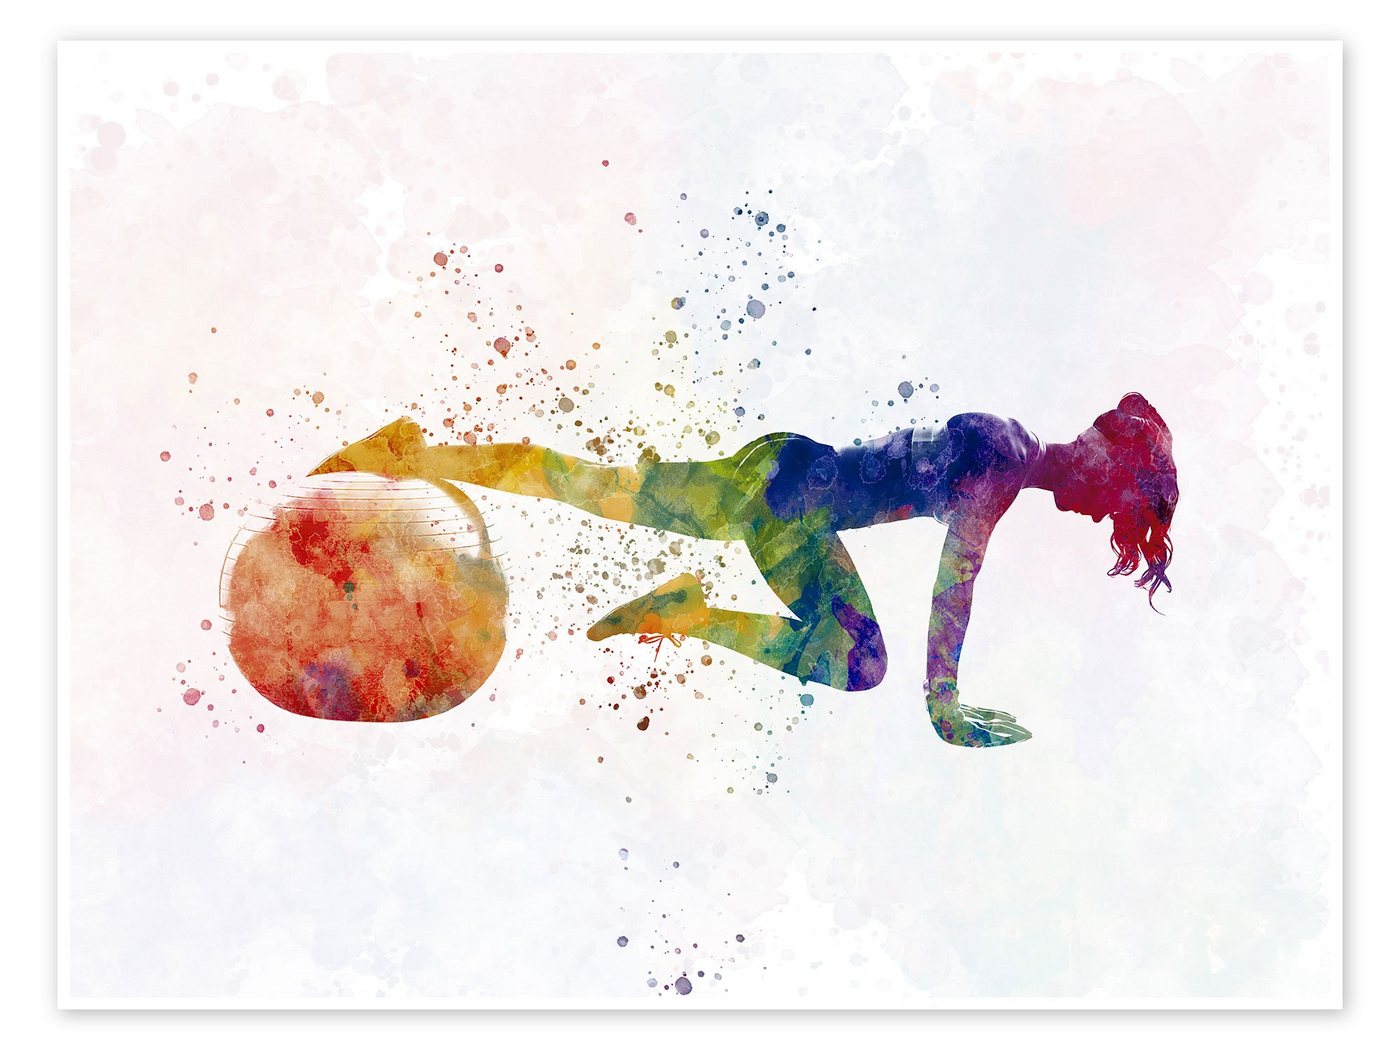 Posterlounge Poster nobelart, Fitnessübung mit einem Ball VII, Fitnessraum Illustration von Posterlounge